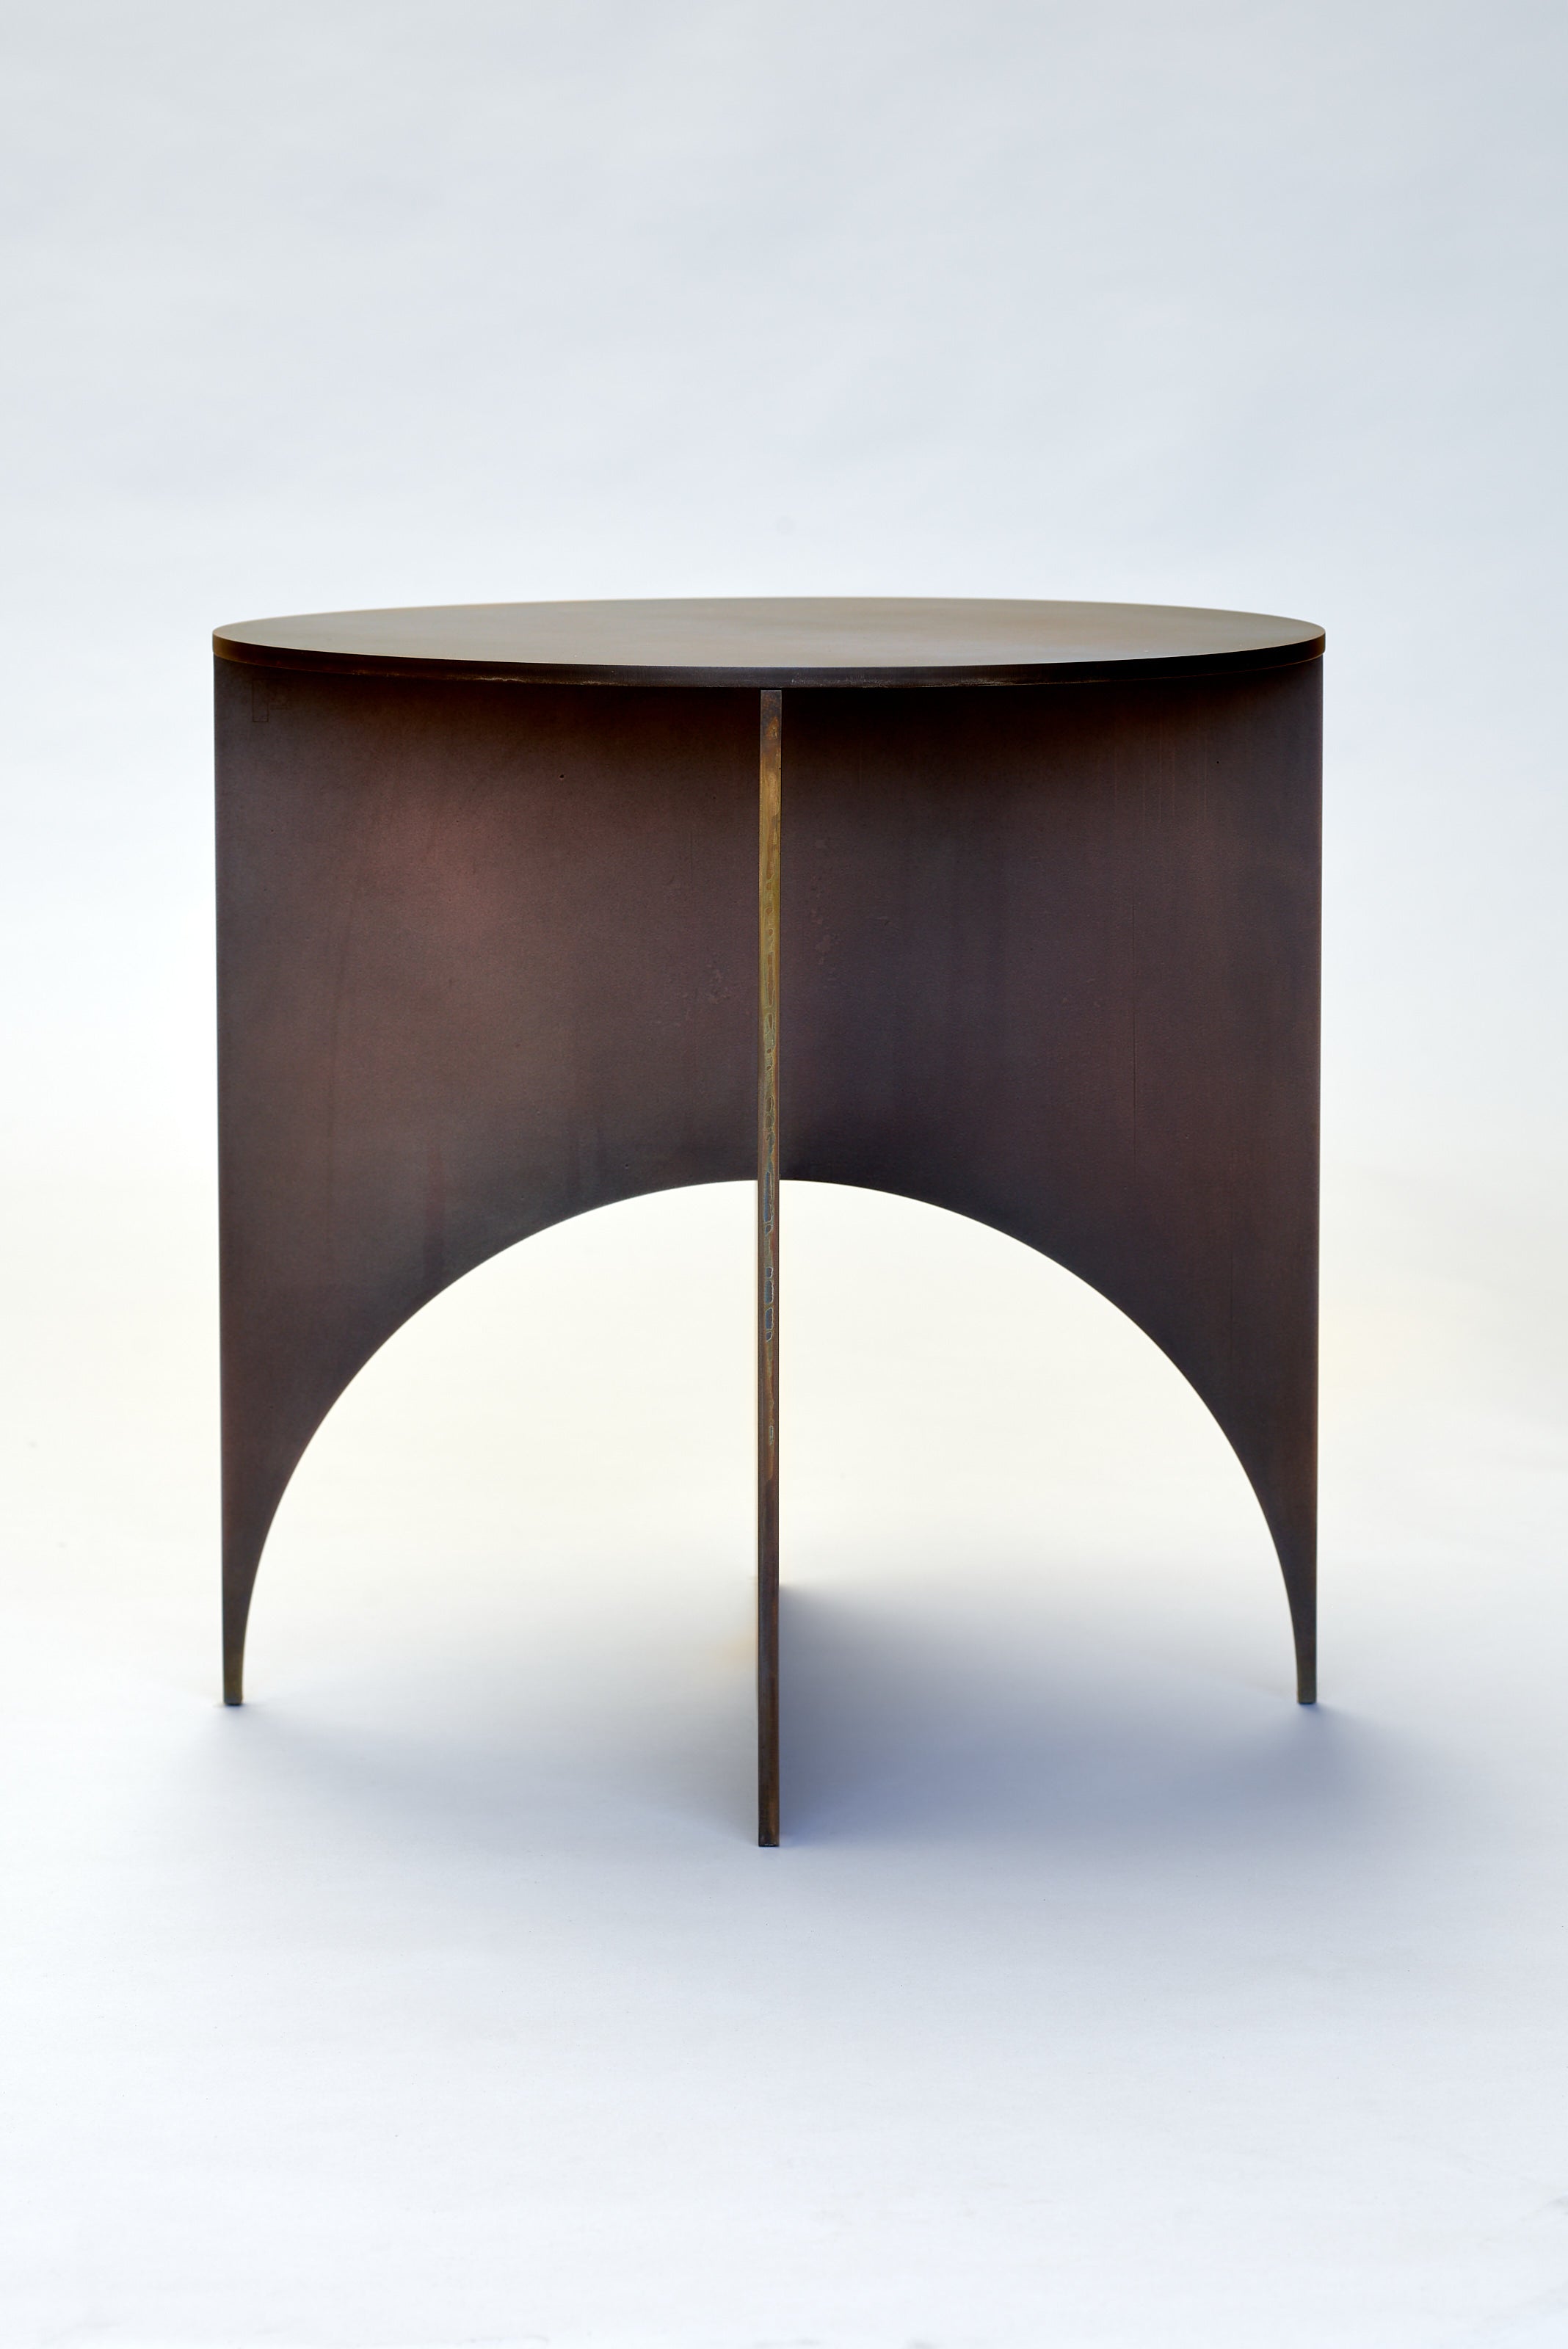 Iris Steel Table by Frank Penders